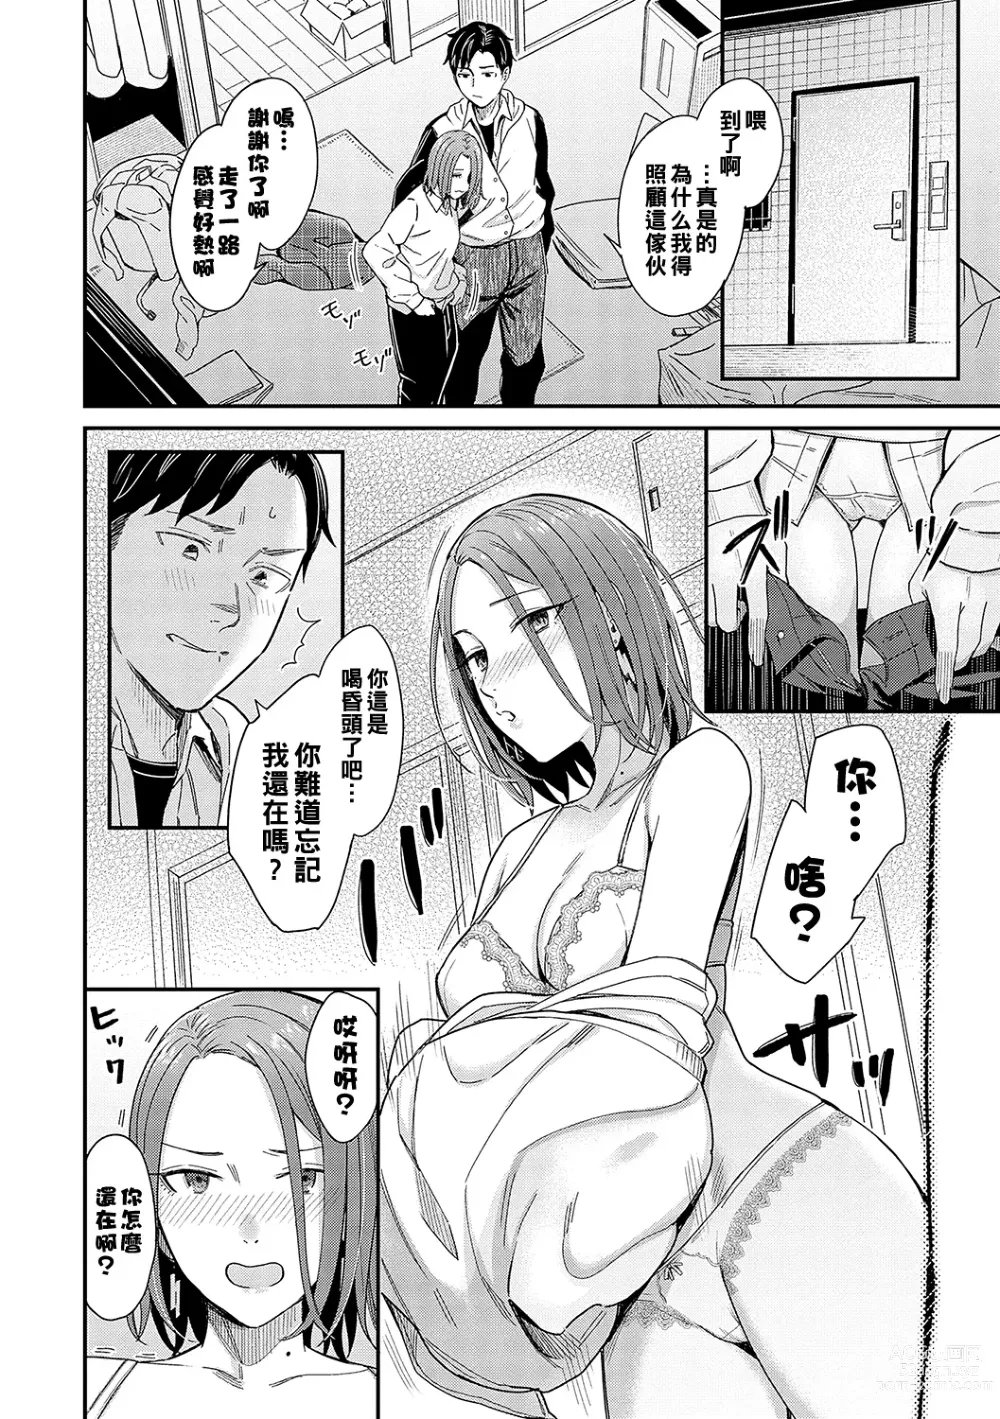 Page 6 of manga Kudaranai Renai Eiga no You ni... - Like a crappy romance movie...